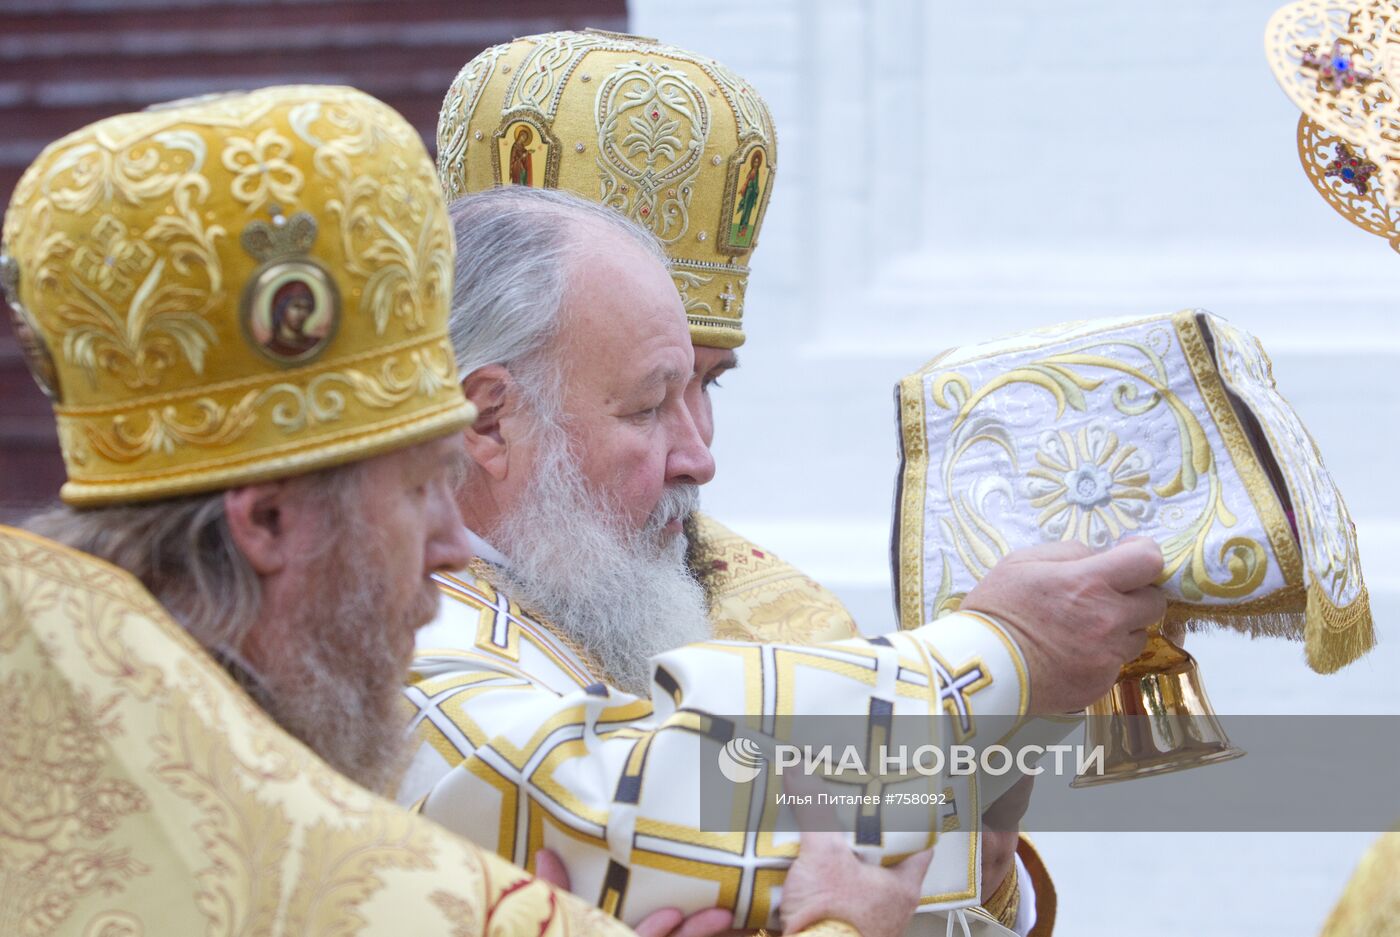 Освящение Свято-Успенского кафедрального собора в Ярославле